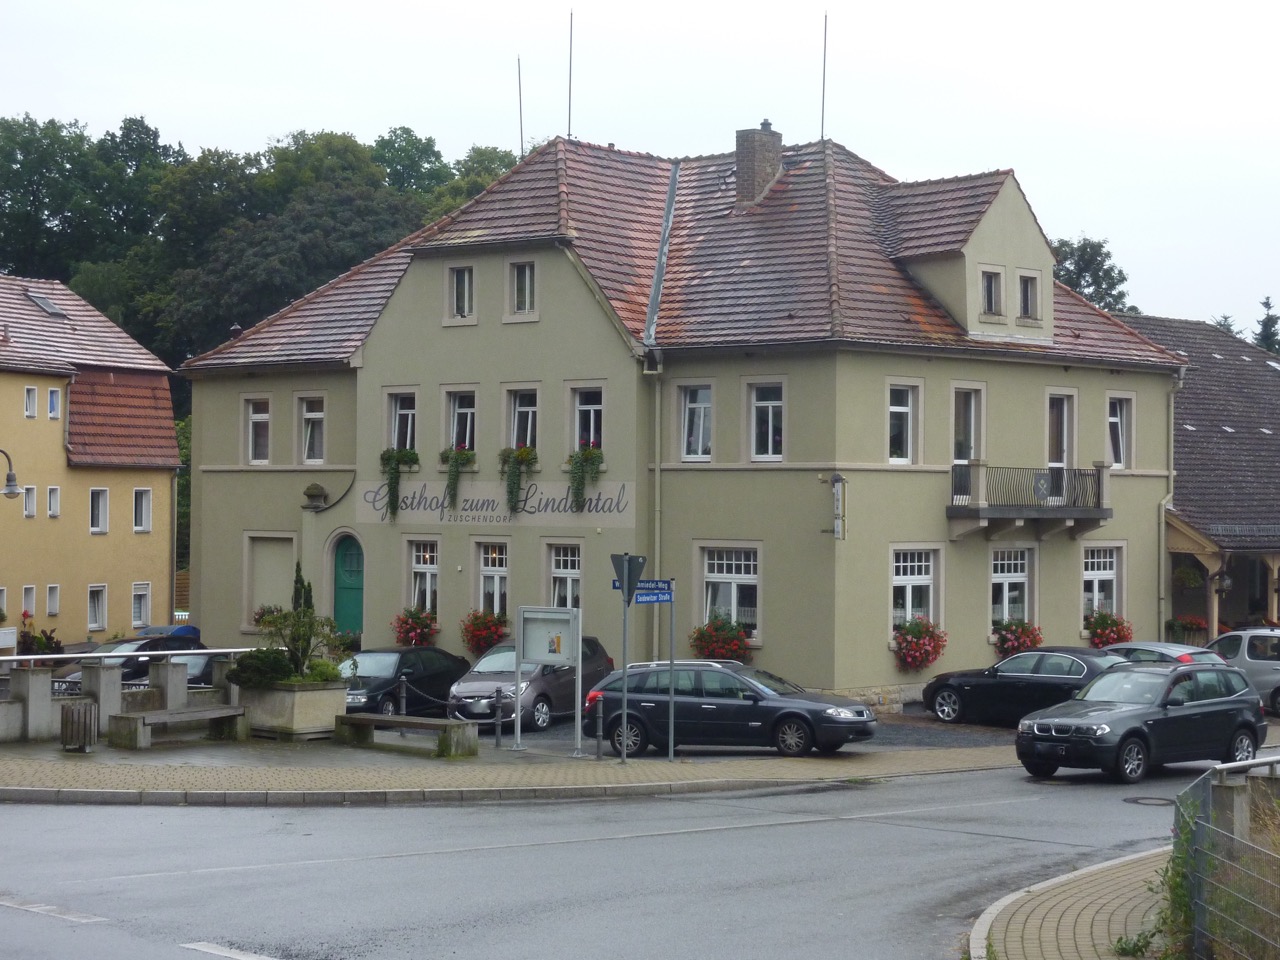 Bild 11 Gasthof Zum Lindental in Pirna